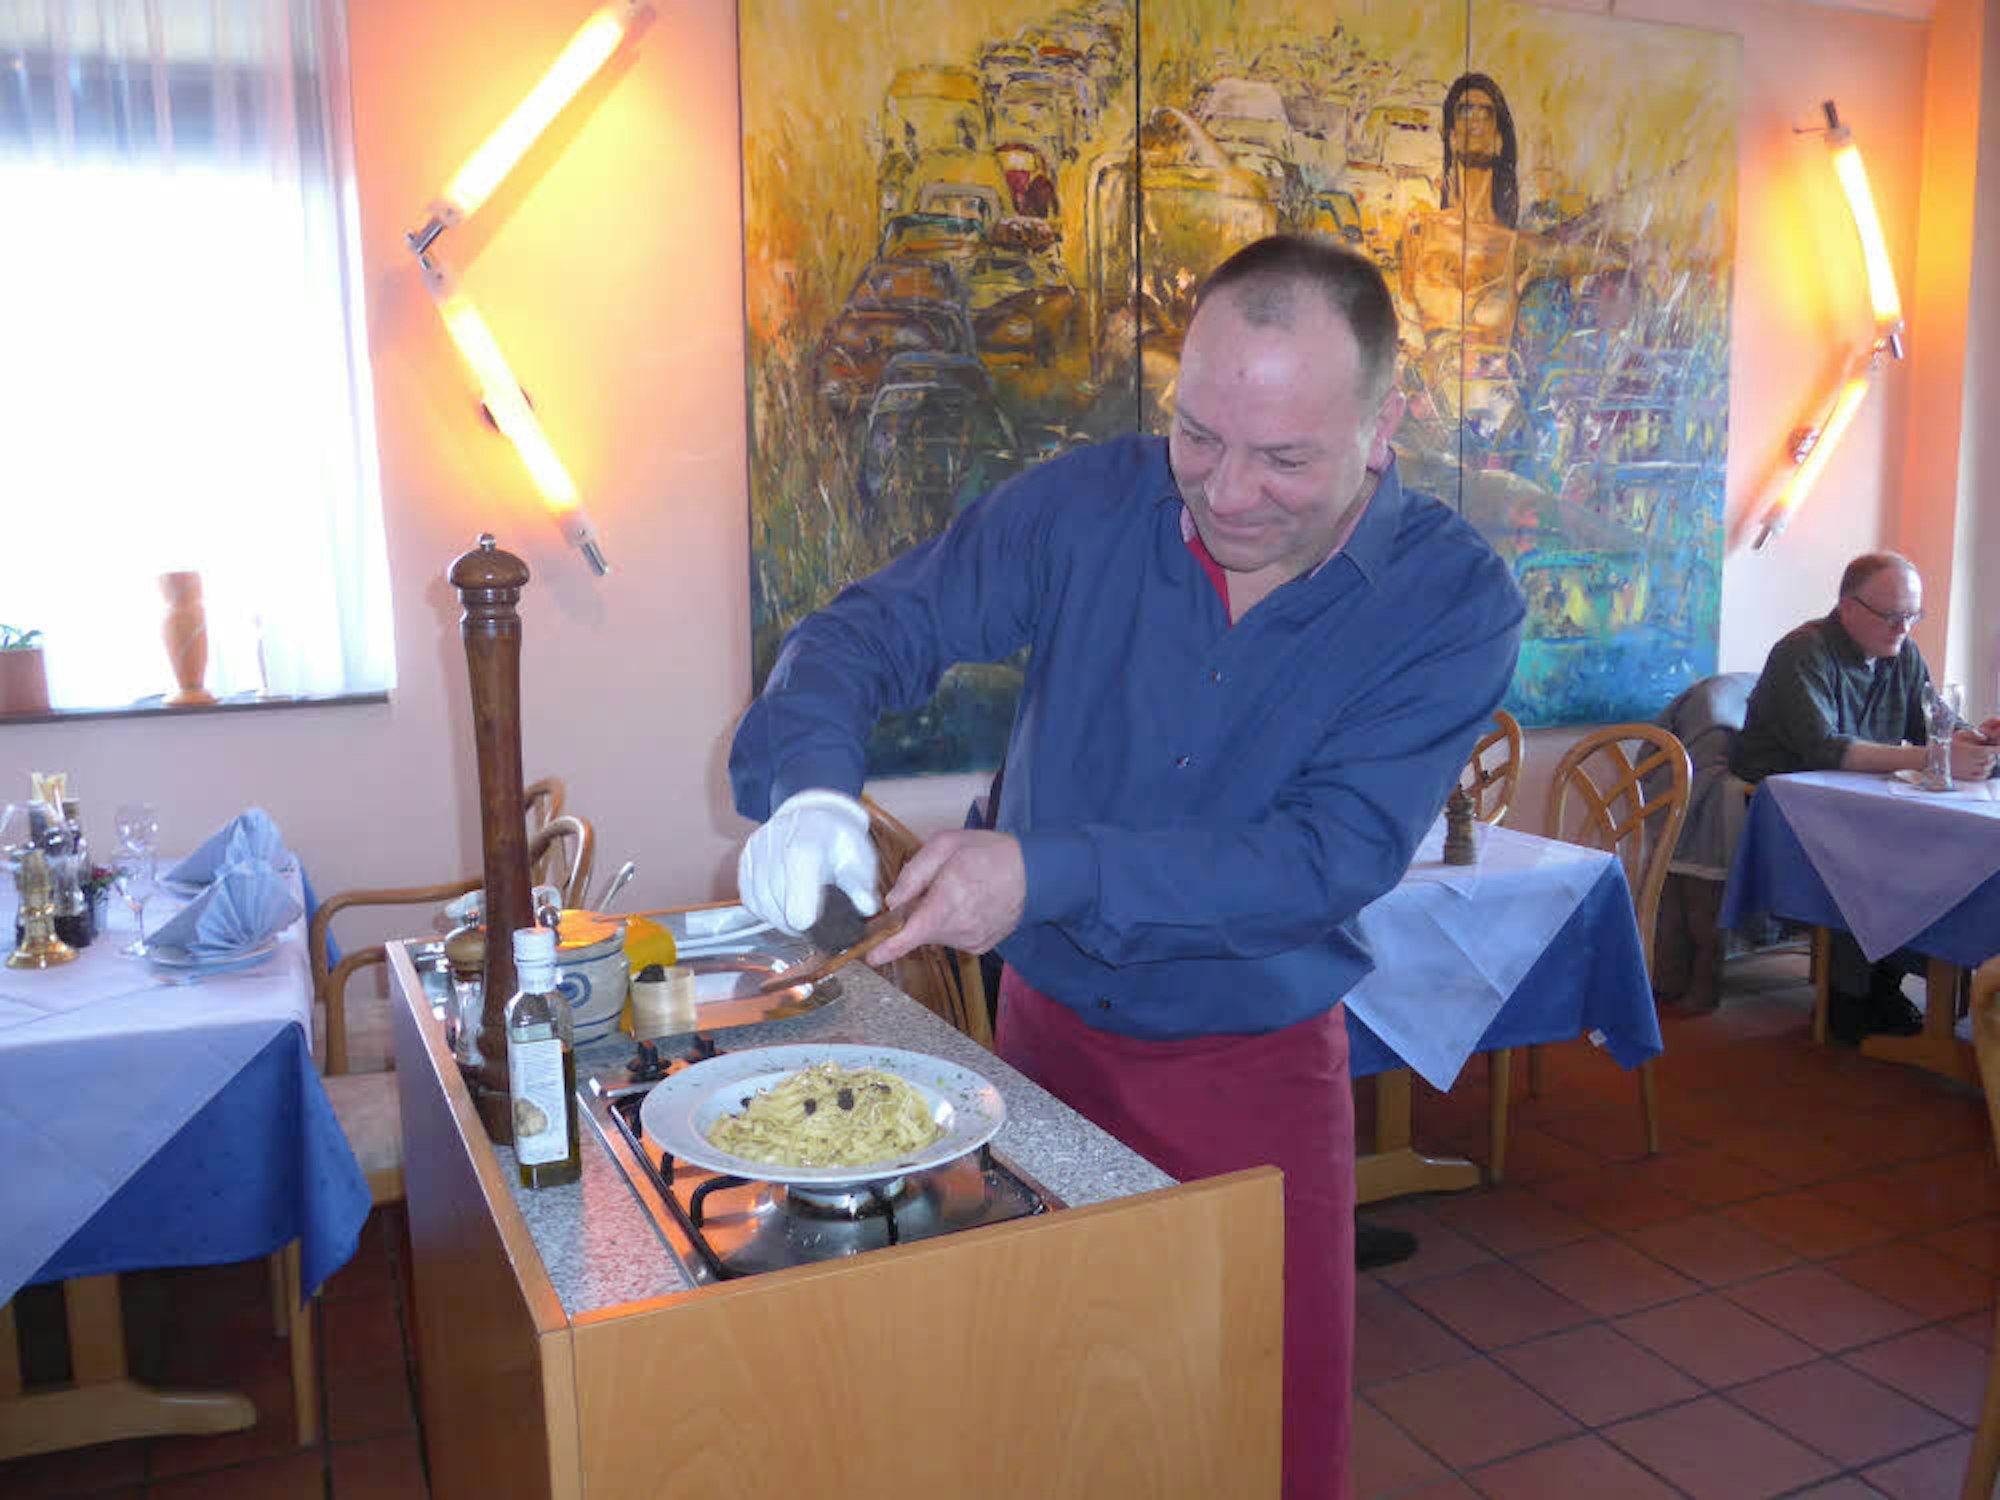 Thomas Dams vom Ristorante „Dolce Vita“ in Frechen bereitet Fettuccine mit frischem Trüffel und Parmesan vor den Augen der Gäste zu.